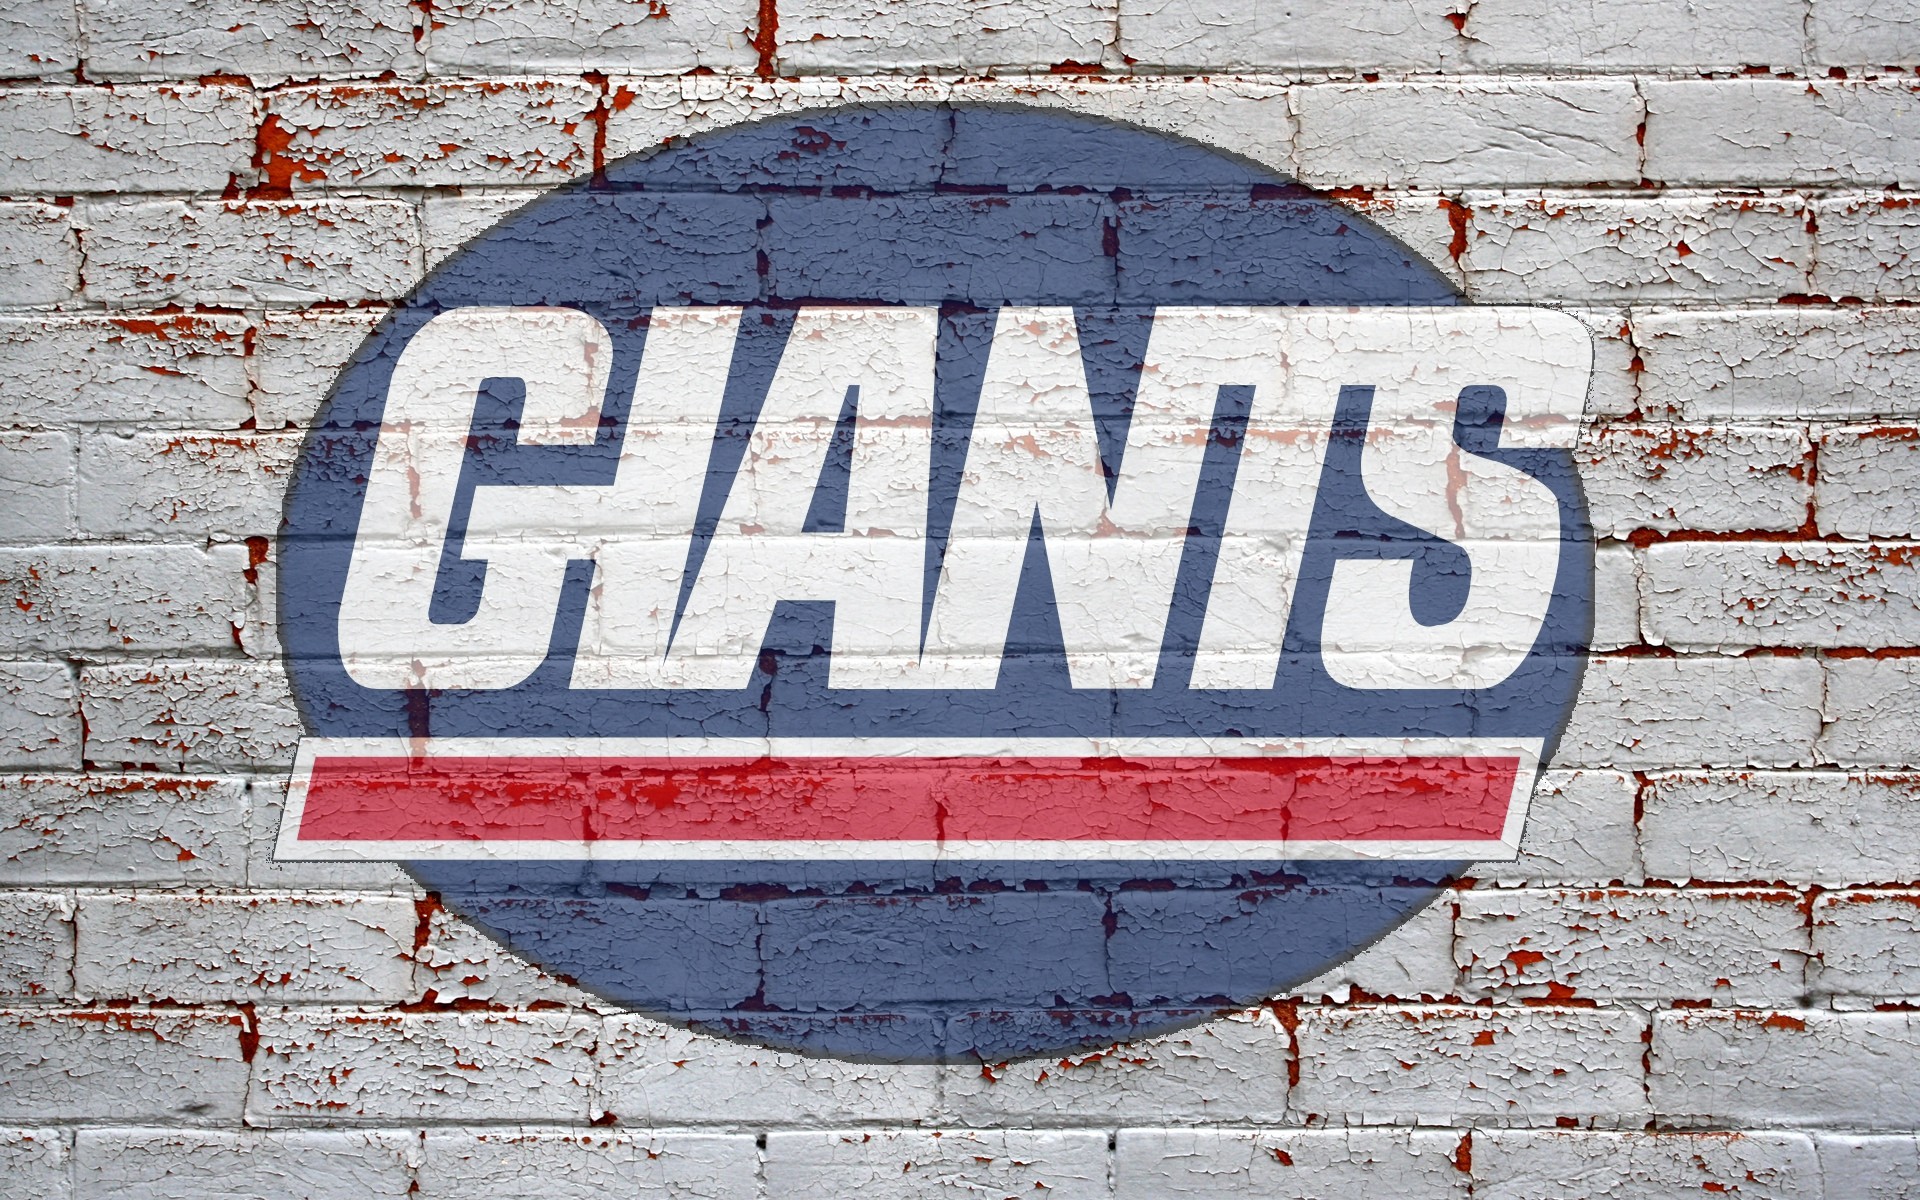 New York Giants on Twitter Wallpapers We gotchu httpstcoCa1bsmbvsd   Twitter